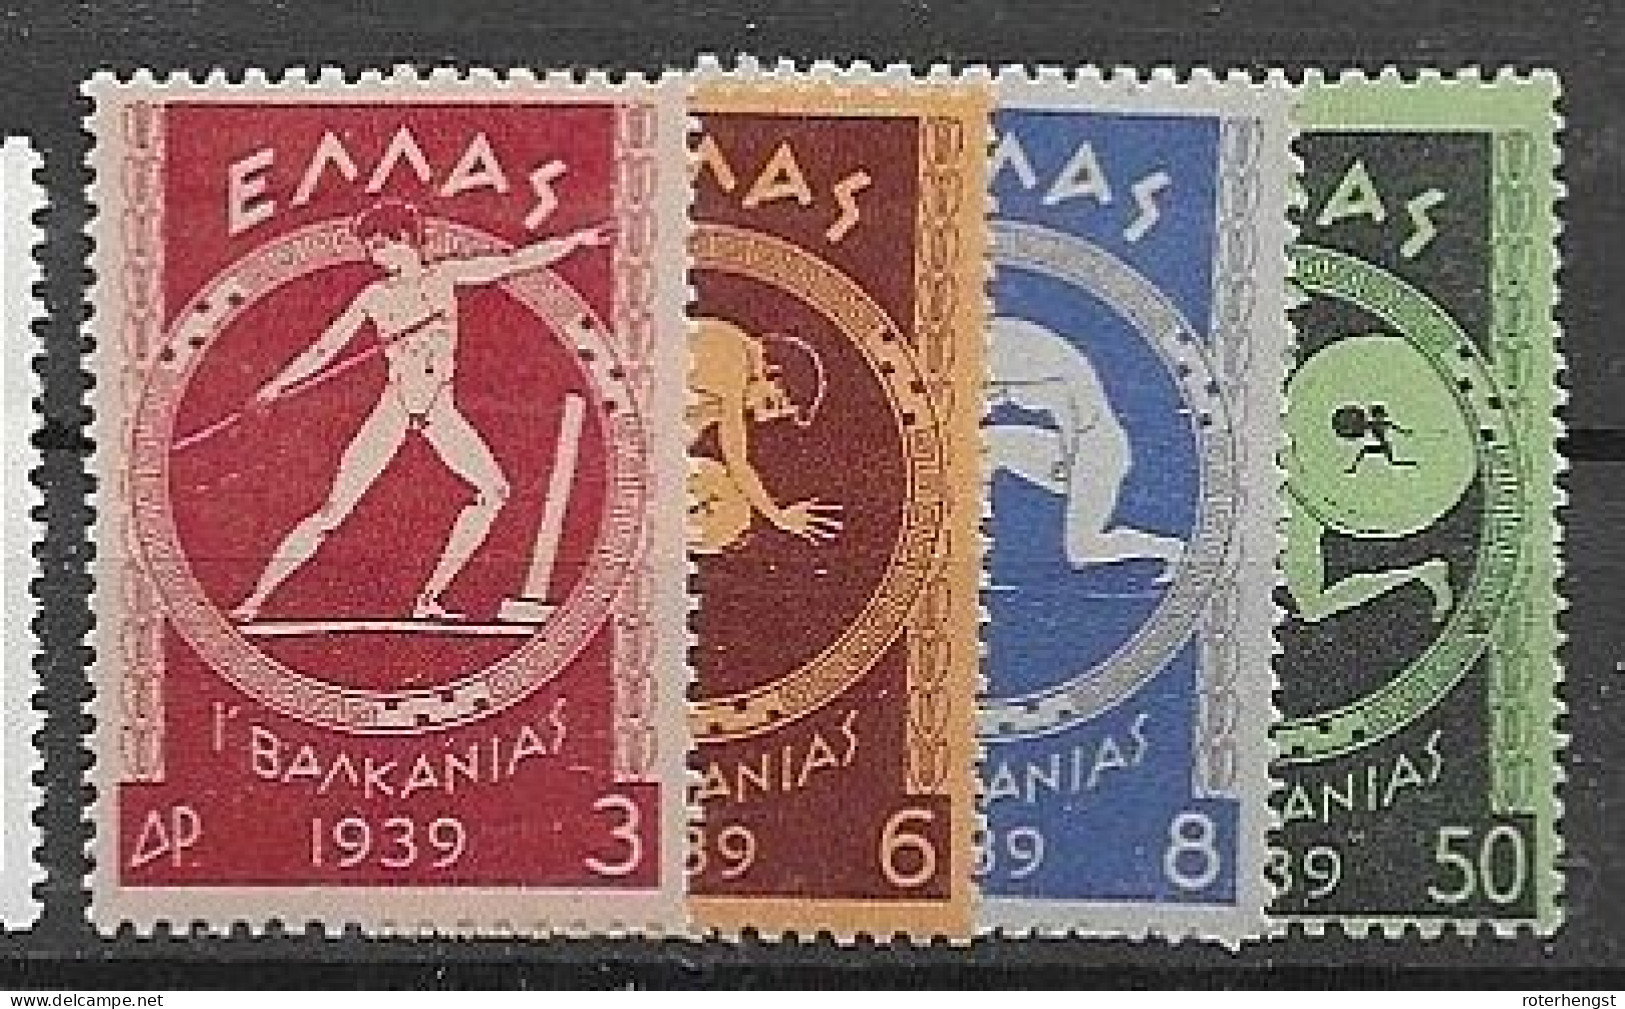 Greece 1933 Mh * (21 Euros) Complete Set - Ungebraucht